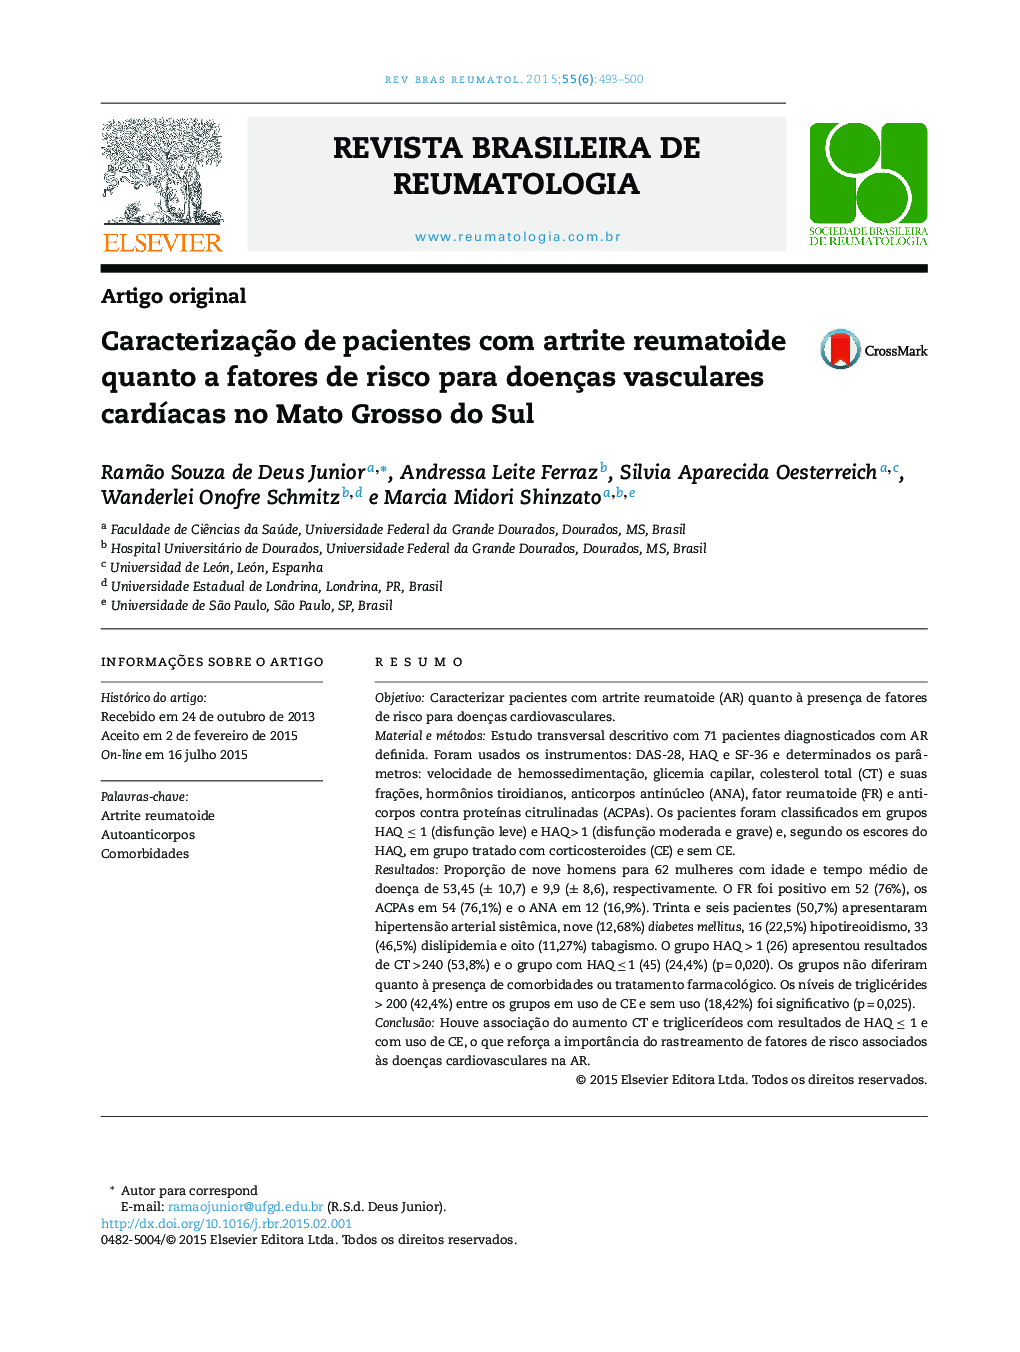 Caracterização de pacientes com artrite reumatoide quanto a fatores de risco para doenças vasculares cardíacas no Mato Grosso do Sul